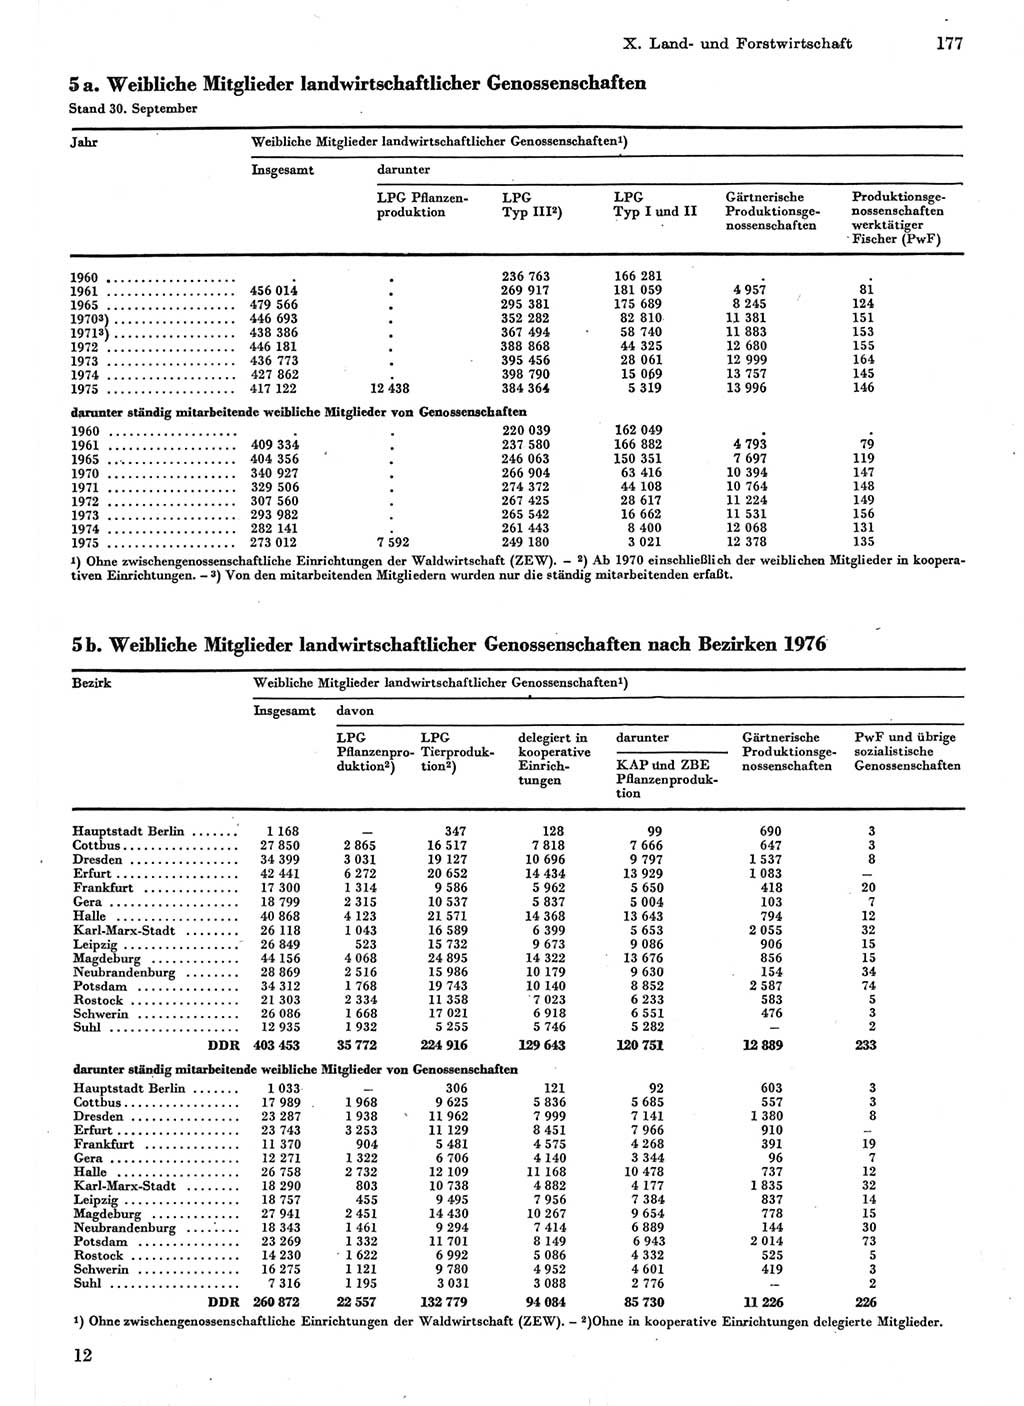 Statistisches Jahrbuch der Deutschen Demokratischen Republik (DDR) 1977, Seite 177 (Stat. Jb. DDR 1977, S. 177)